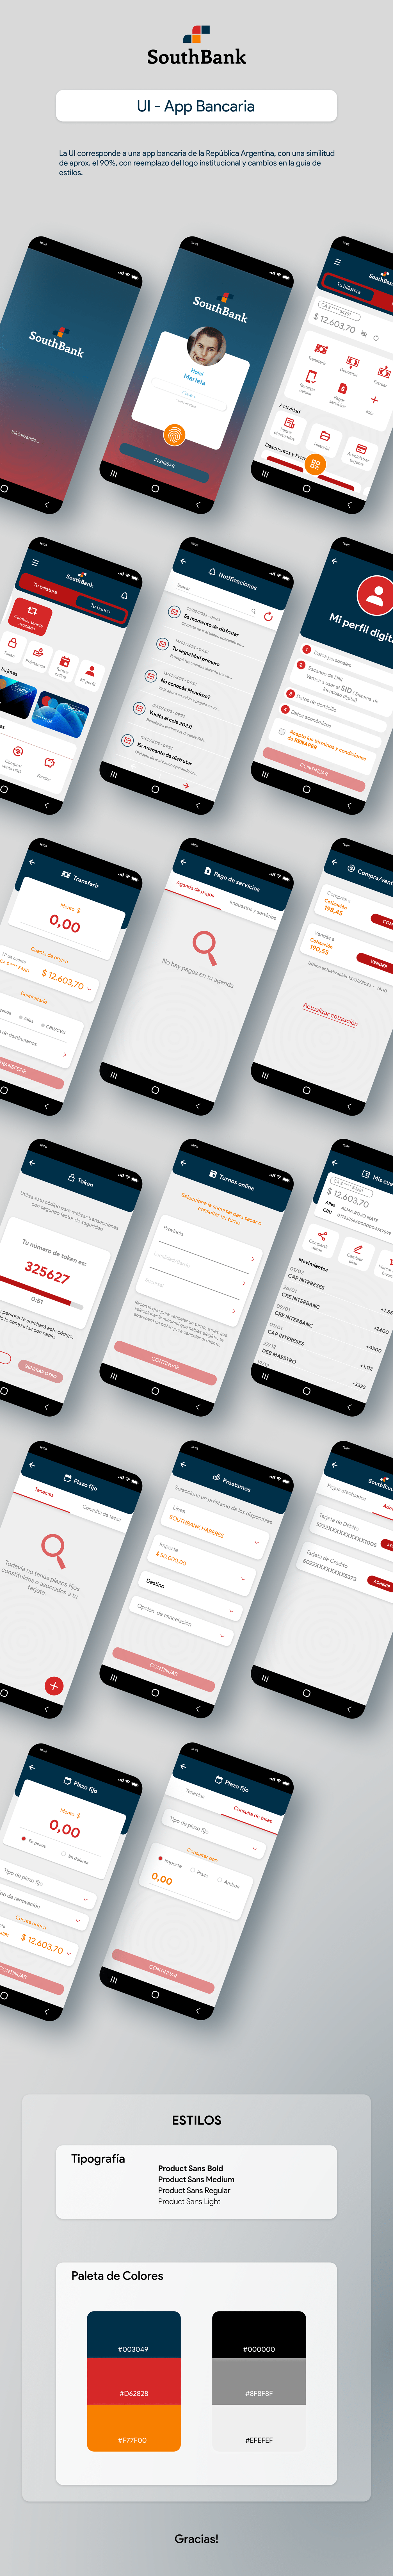 banking app mobile app design ui design UI UX design